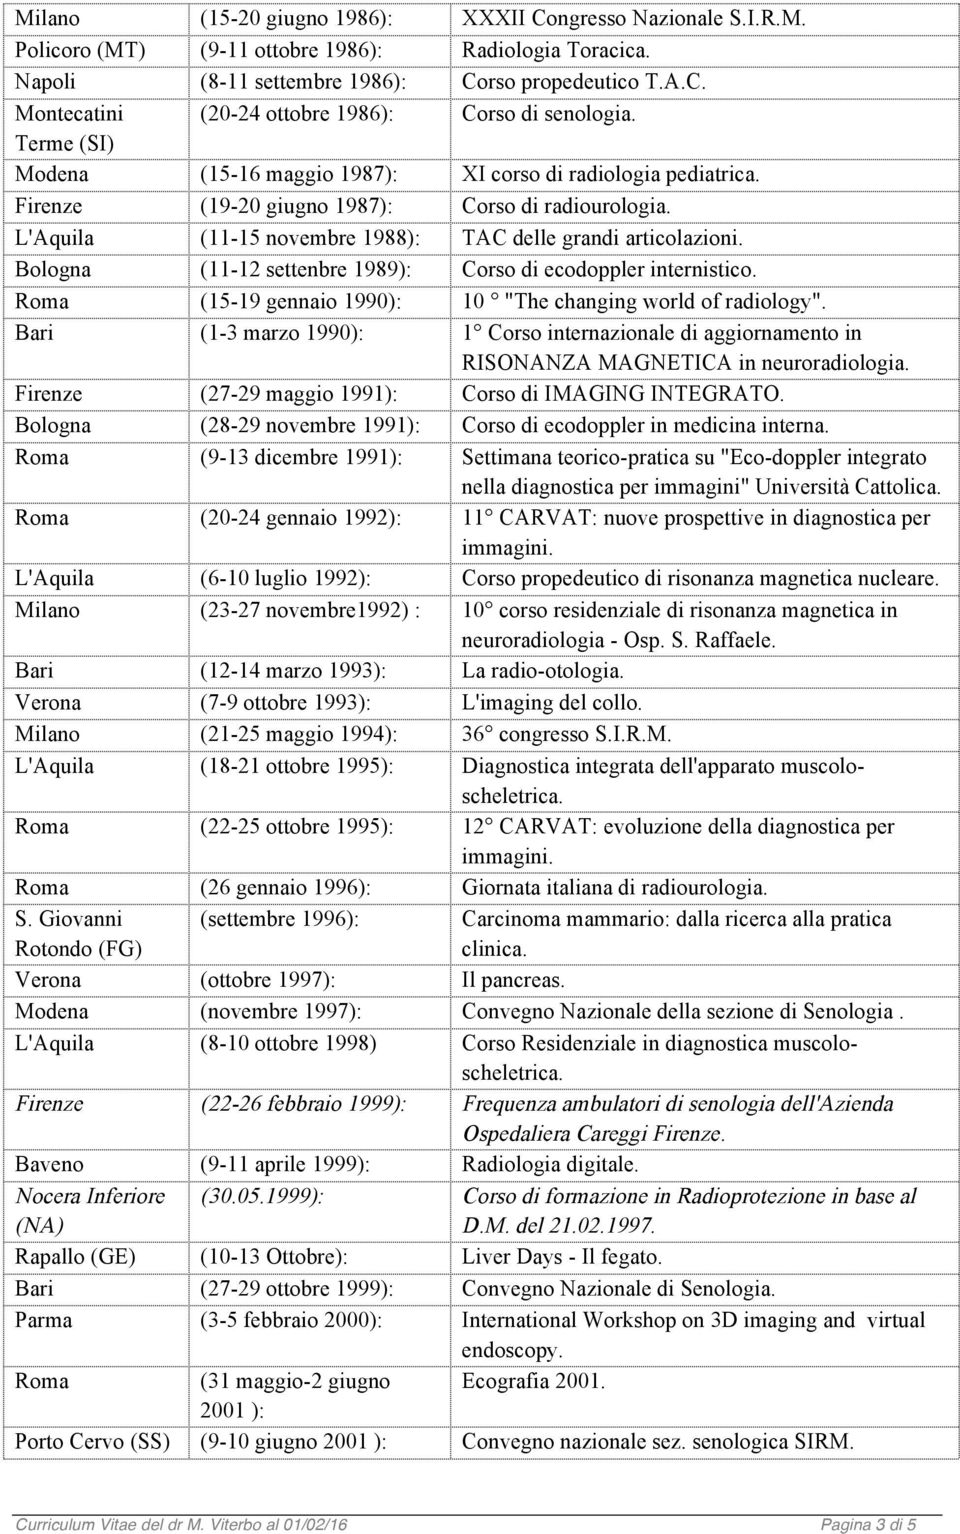 Bologna (11-12 settenbre 1989): Corso di ecodoppler internistico. Roma (15-19 gennaio 1990): 10 "The changing world of radiology".